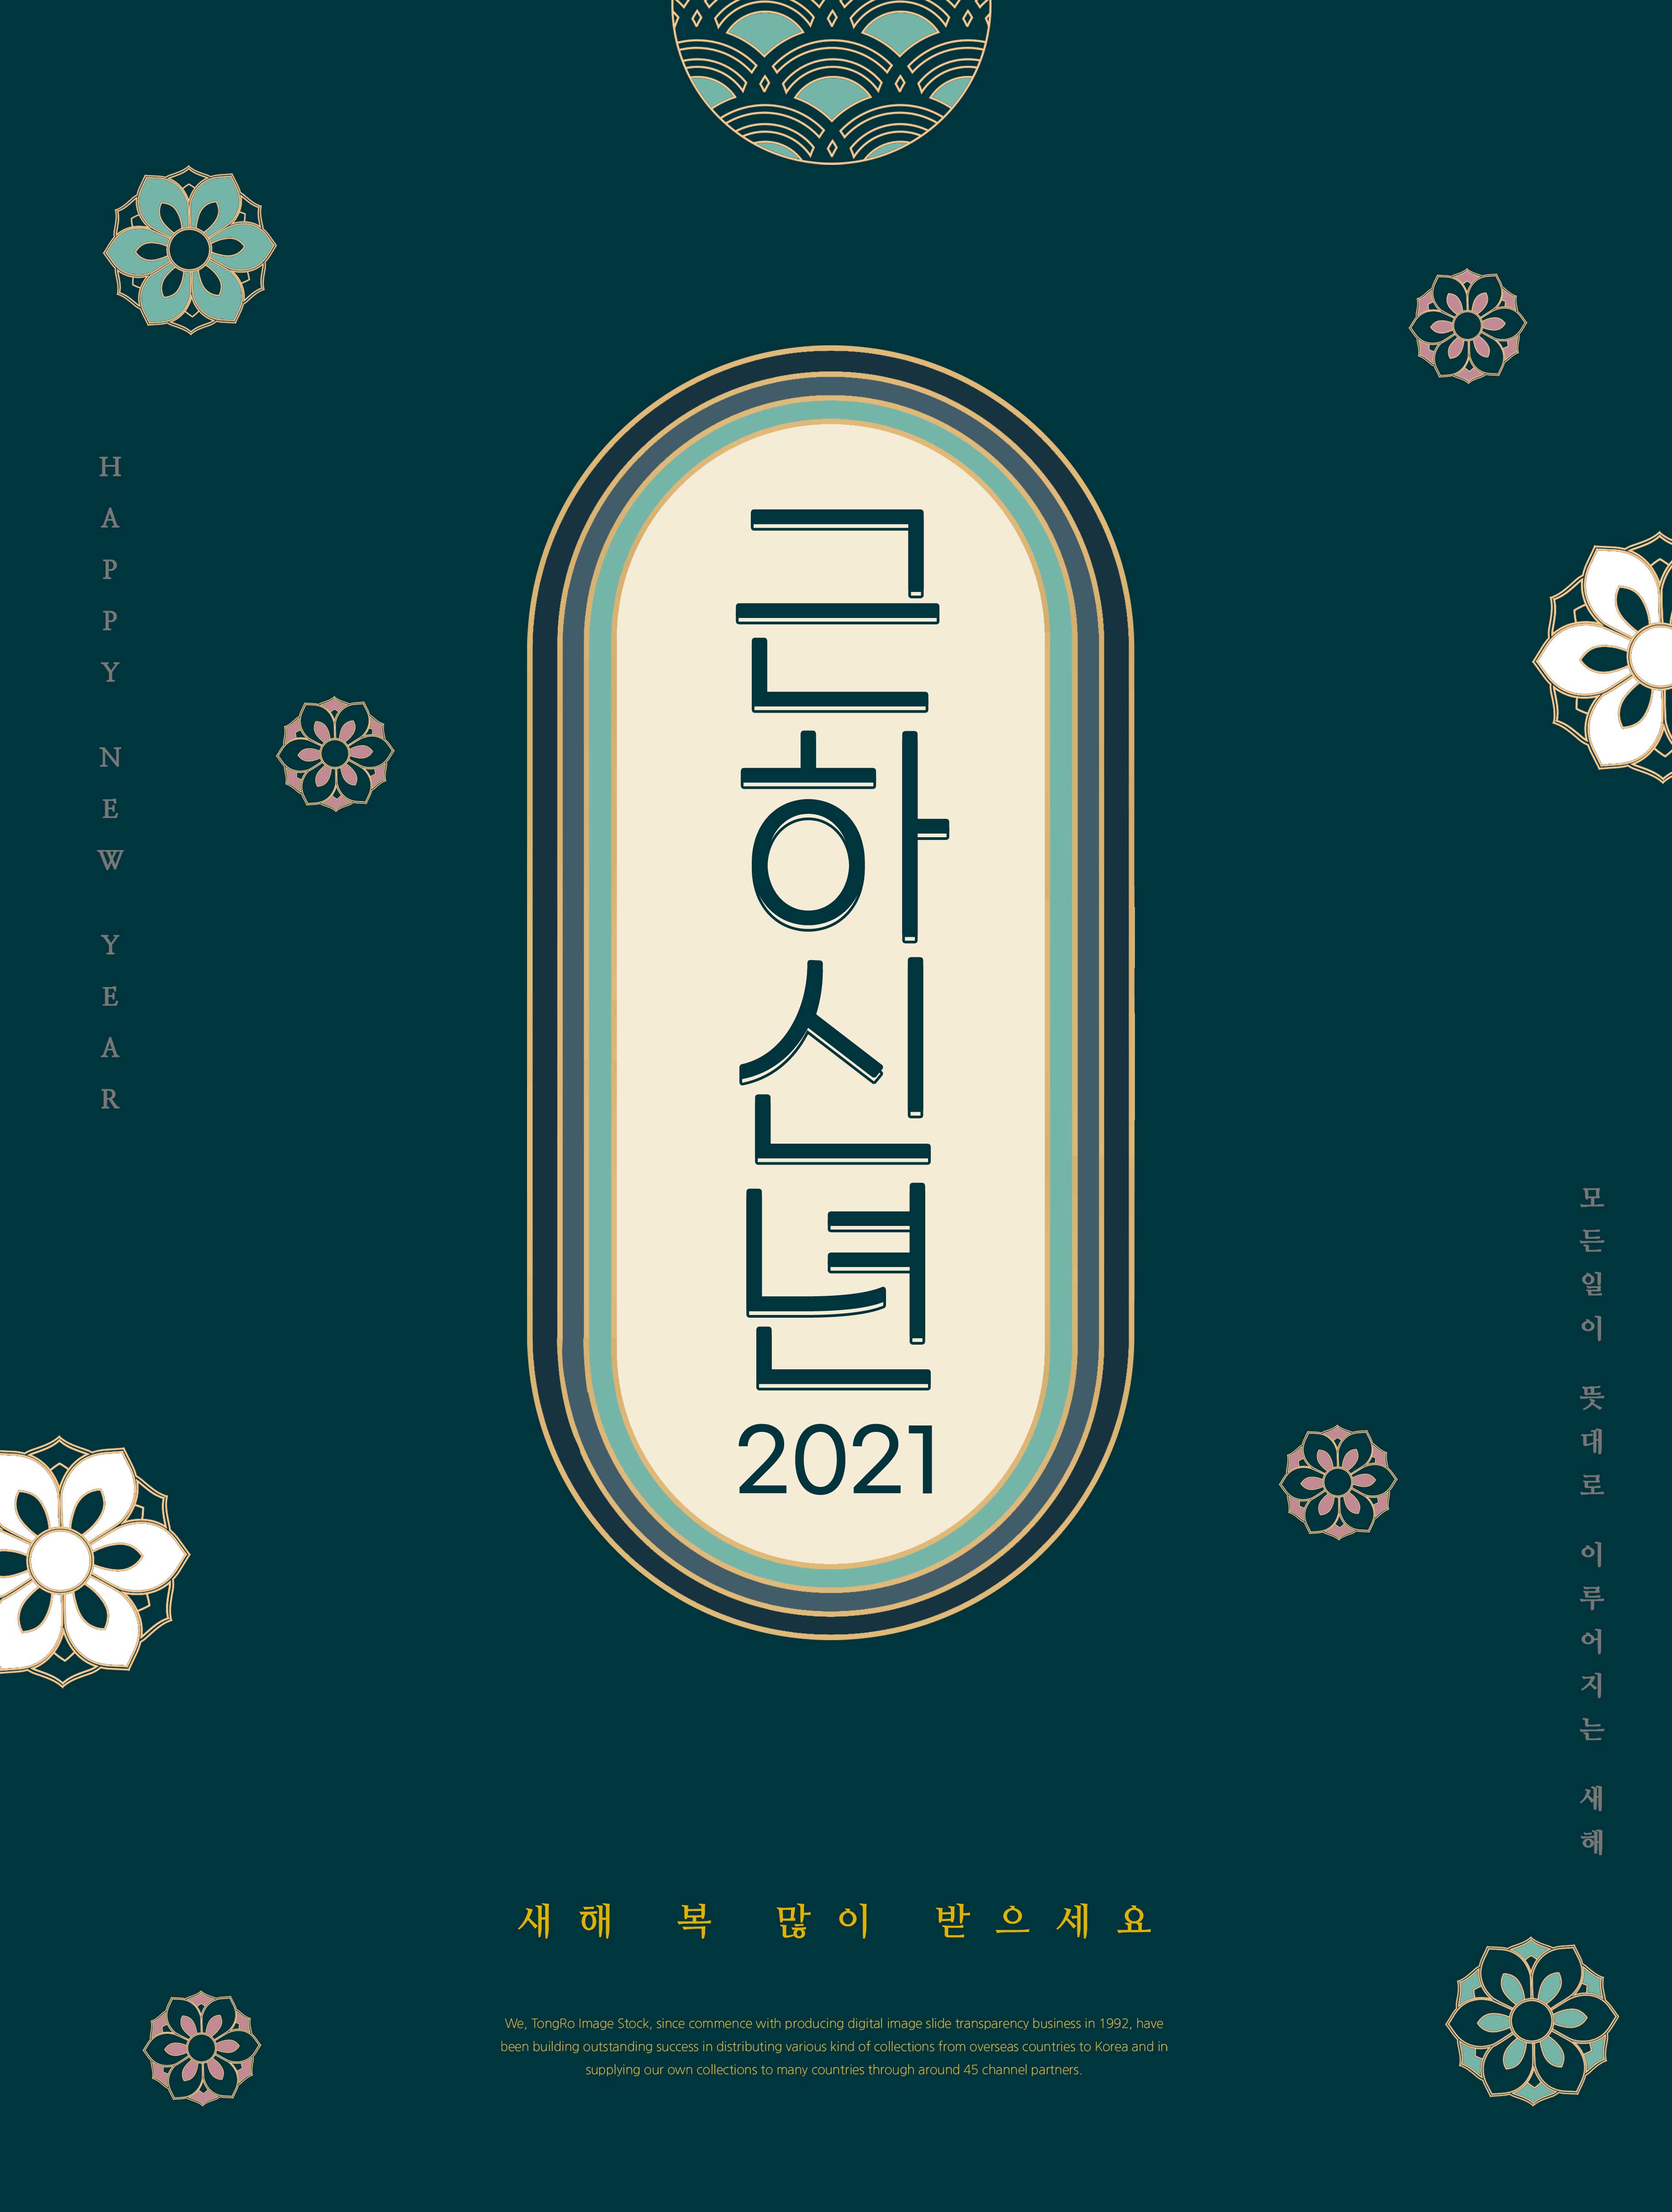 简约风格古典2021新年快乐主题海报设计设计素材模板